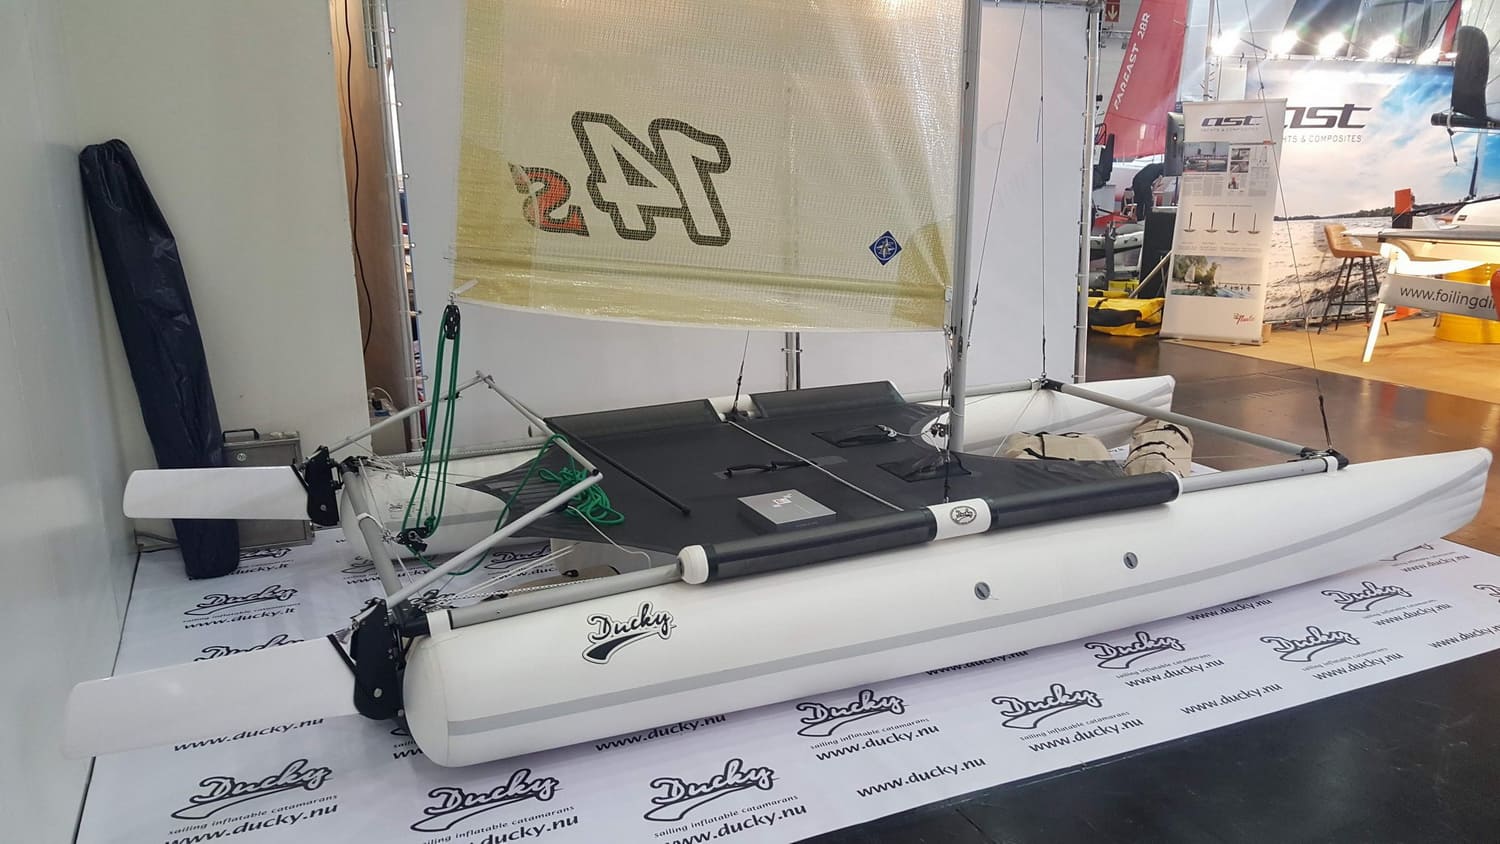 Catamartan Ducky14S, un catamarán hinchable de competición de veleroducky, diseñado para la velocidad y la emoción